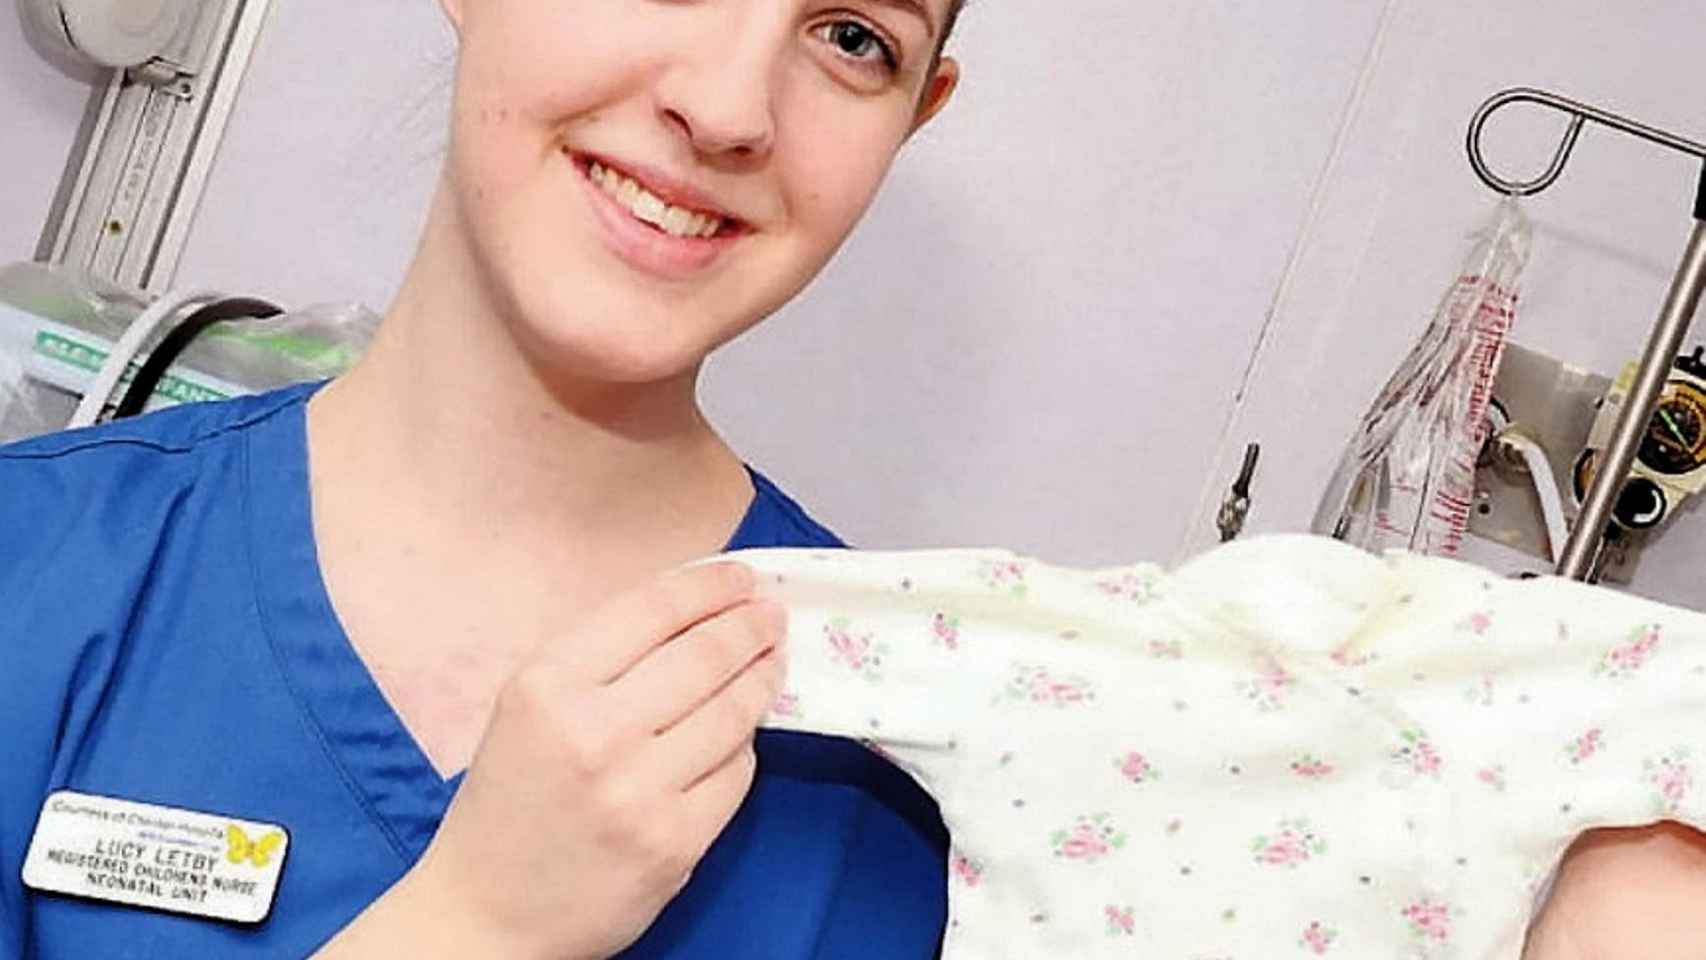 La enfermera Lucy Letby, sospechosa del asesinato de ocho bebés